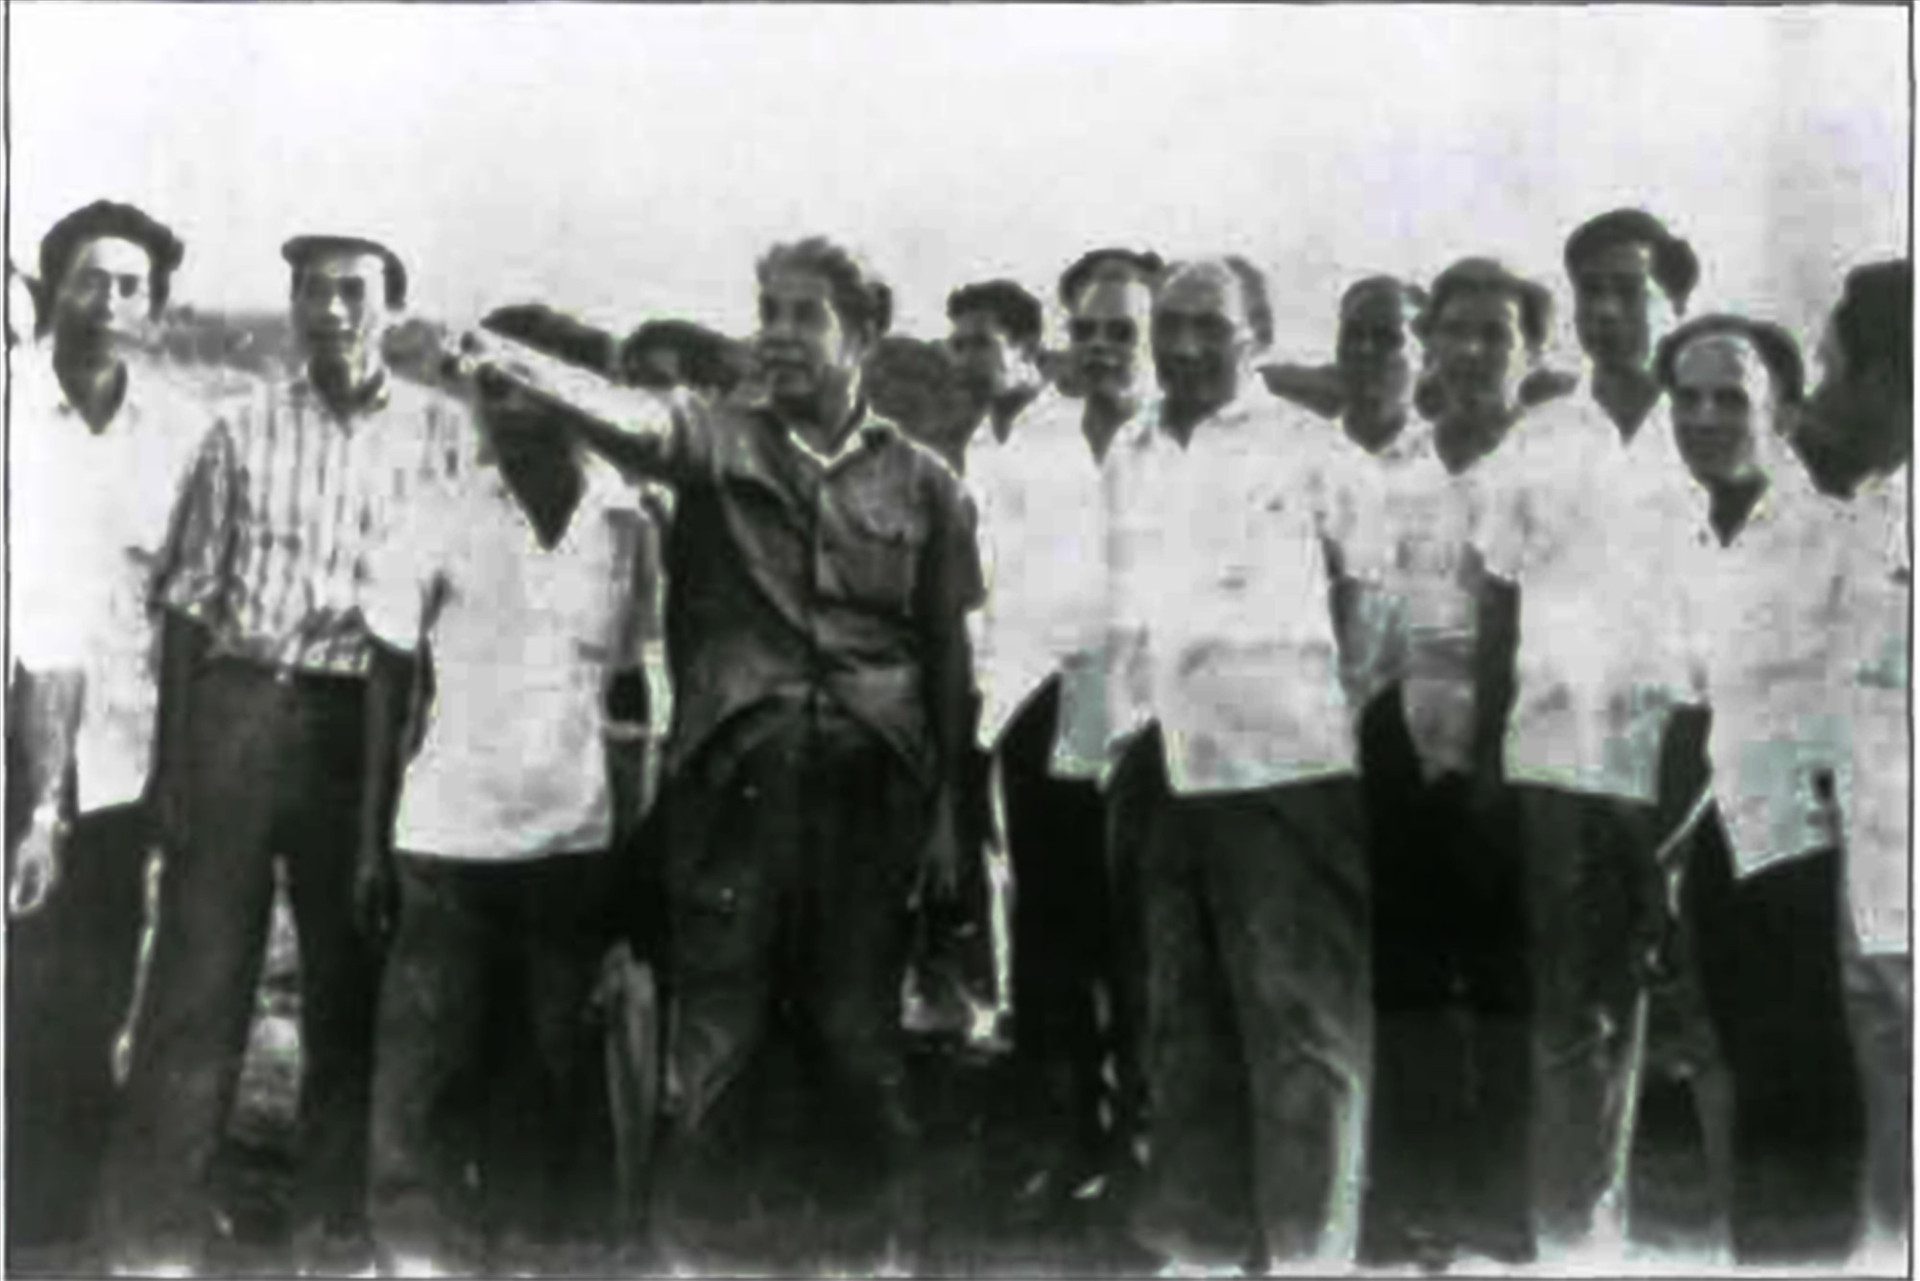 Phó Chủ tịch HĐBT Đỗ Mười (đứng giữa) và đồng chí Võ Chí Công, Phó Chủ tịch HĐBT thăm Hợp tác xã Đại Phước, huyện Đại Lộc tháng 1.1983 (Ảnh tư liệu)